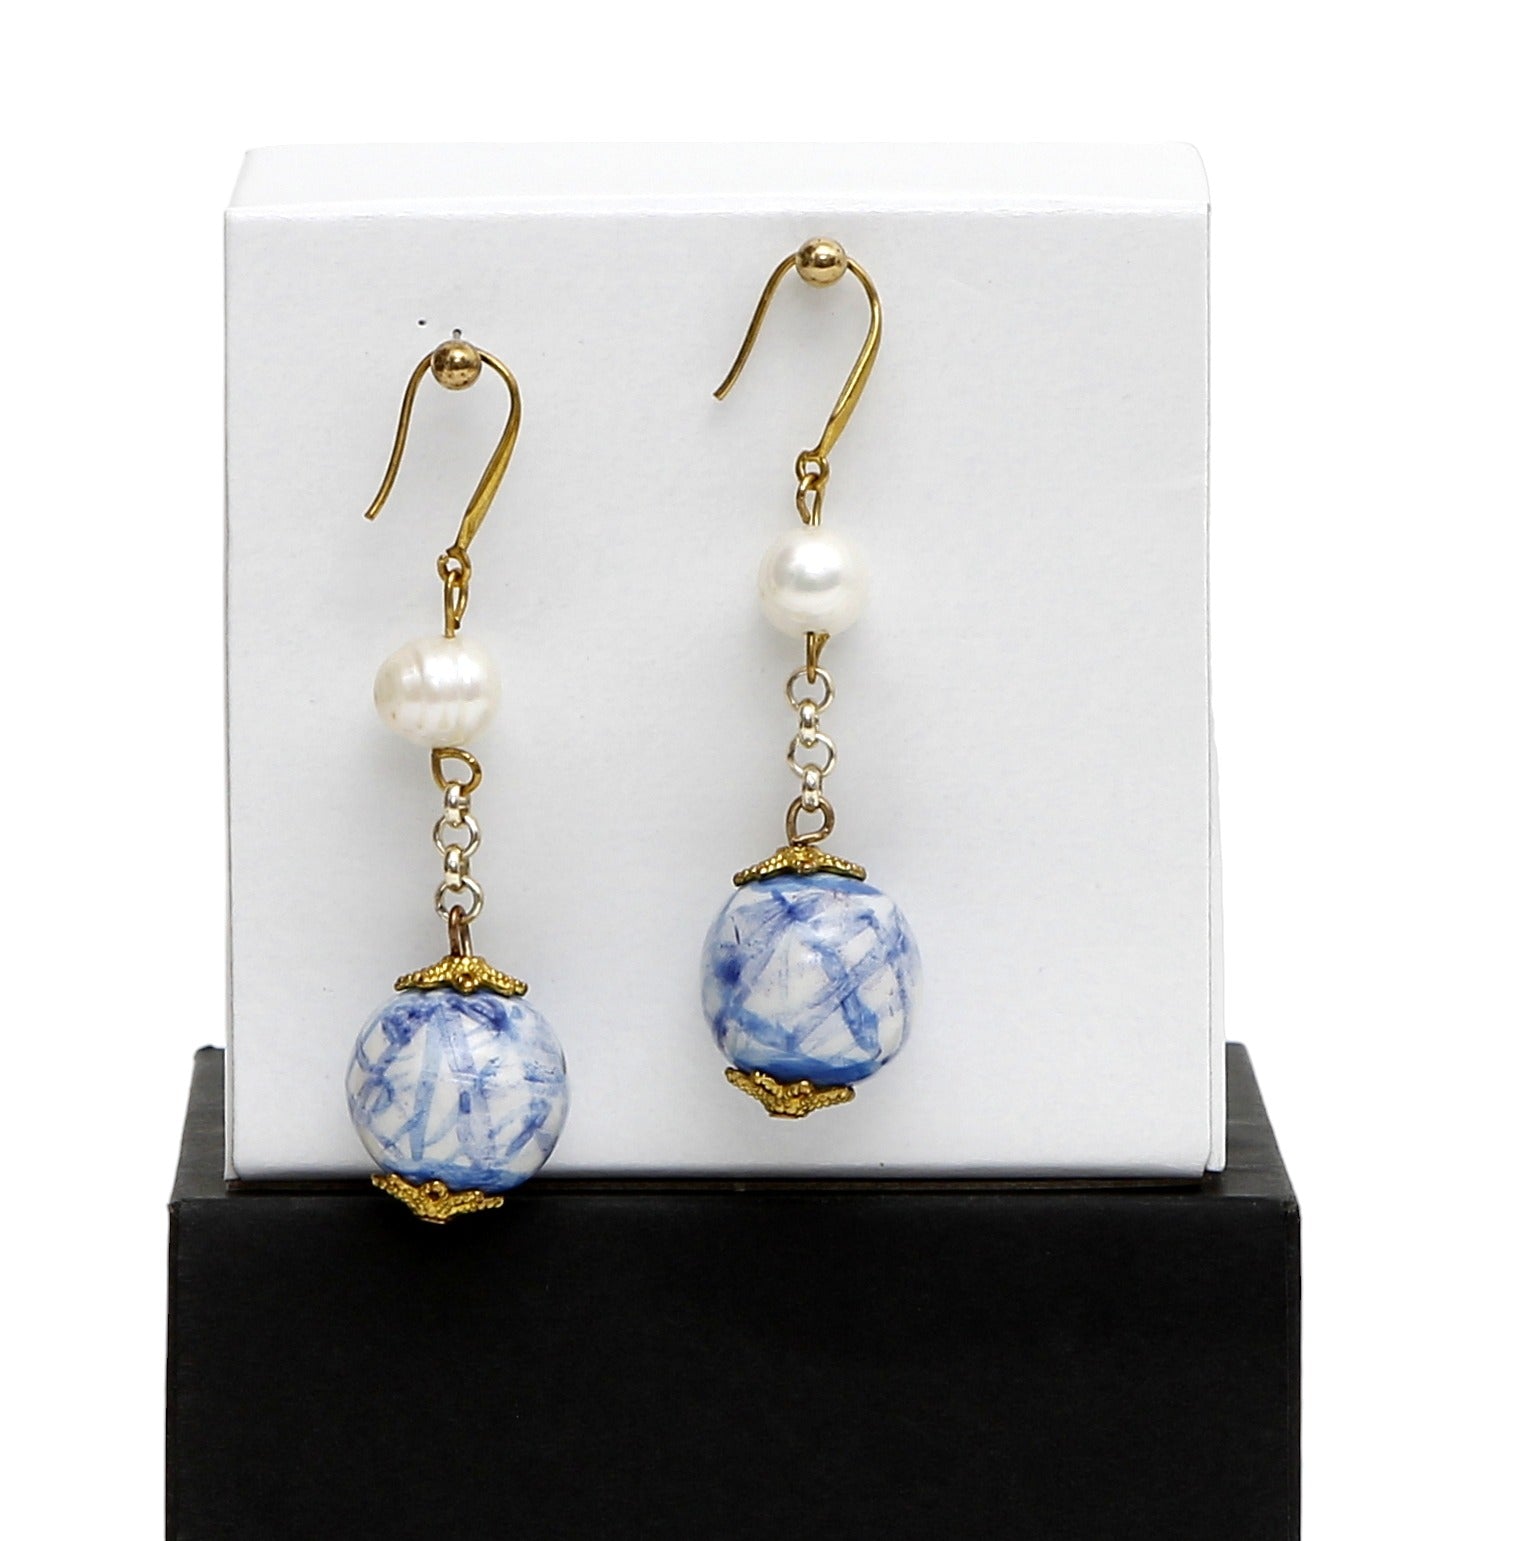 MURANO MURRINA: Hand Blown Murano Glass Earrings - Design Alice - CELESTE/BLUE+MOTHER OF PEARL Glass Beads